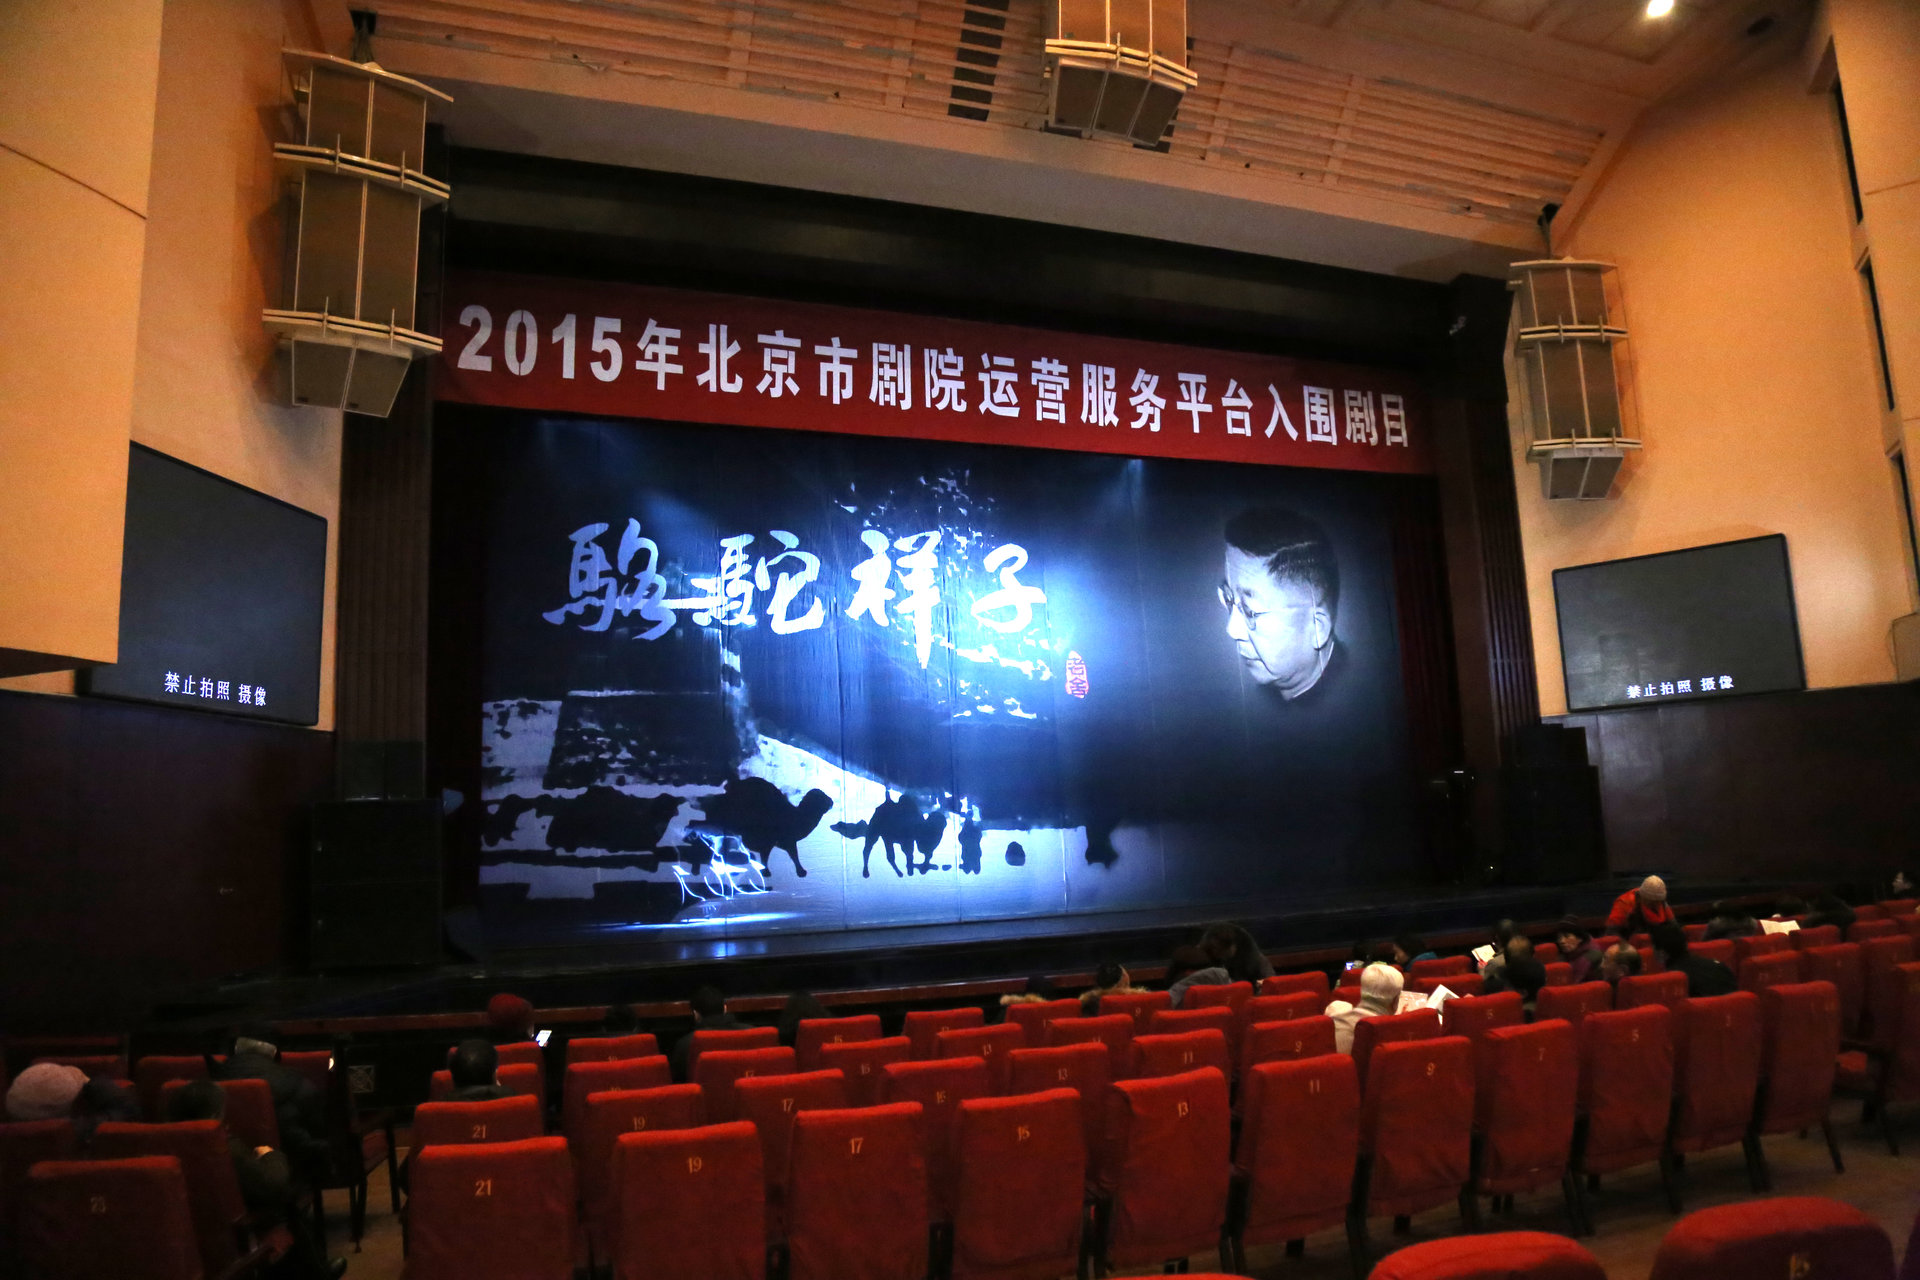 2016年1月22日 北京曲劇《駱駝祥子》